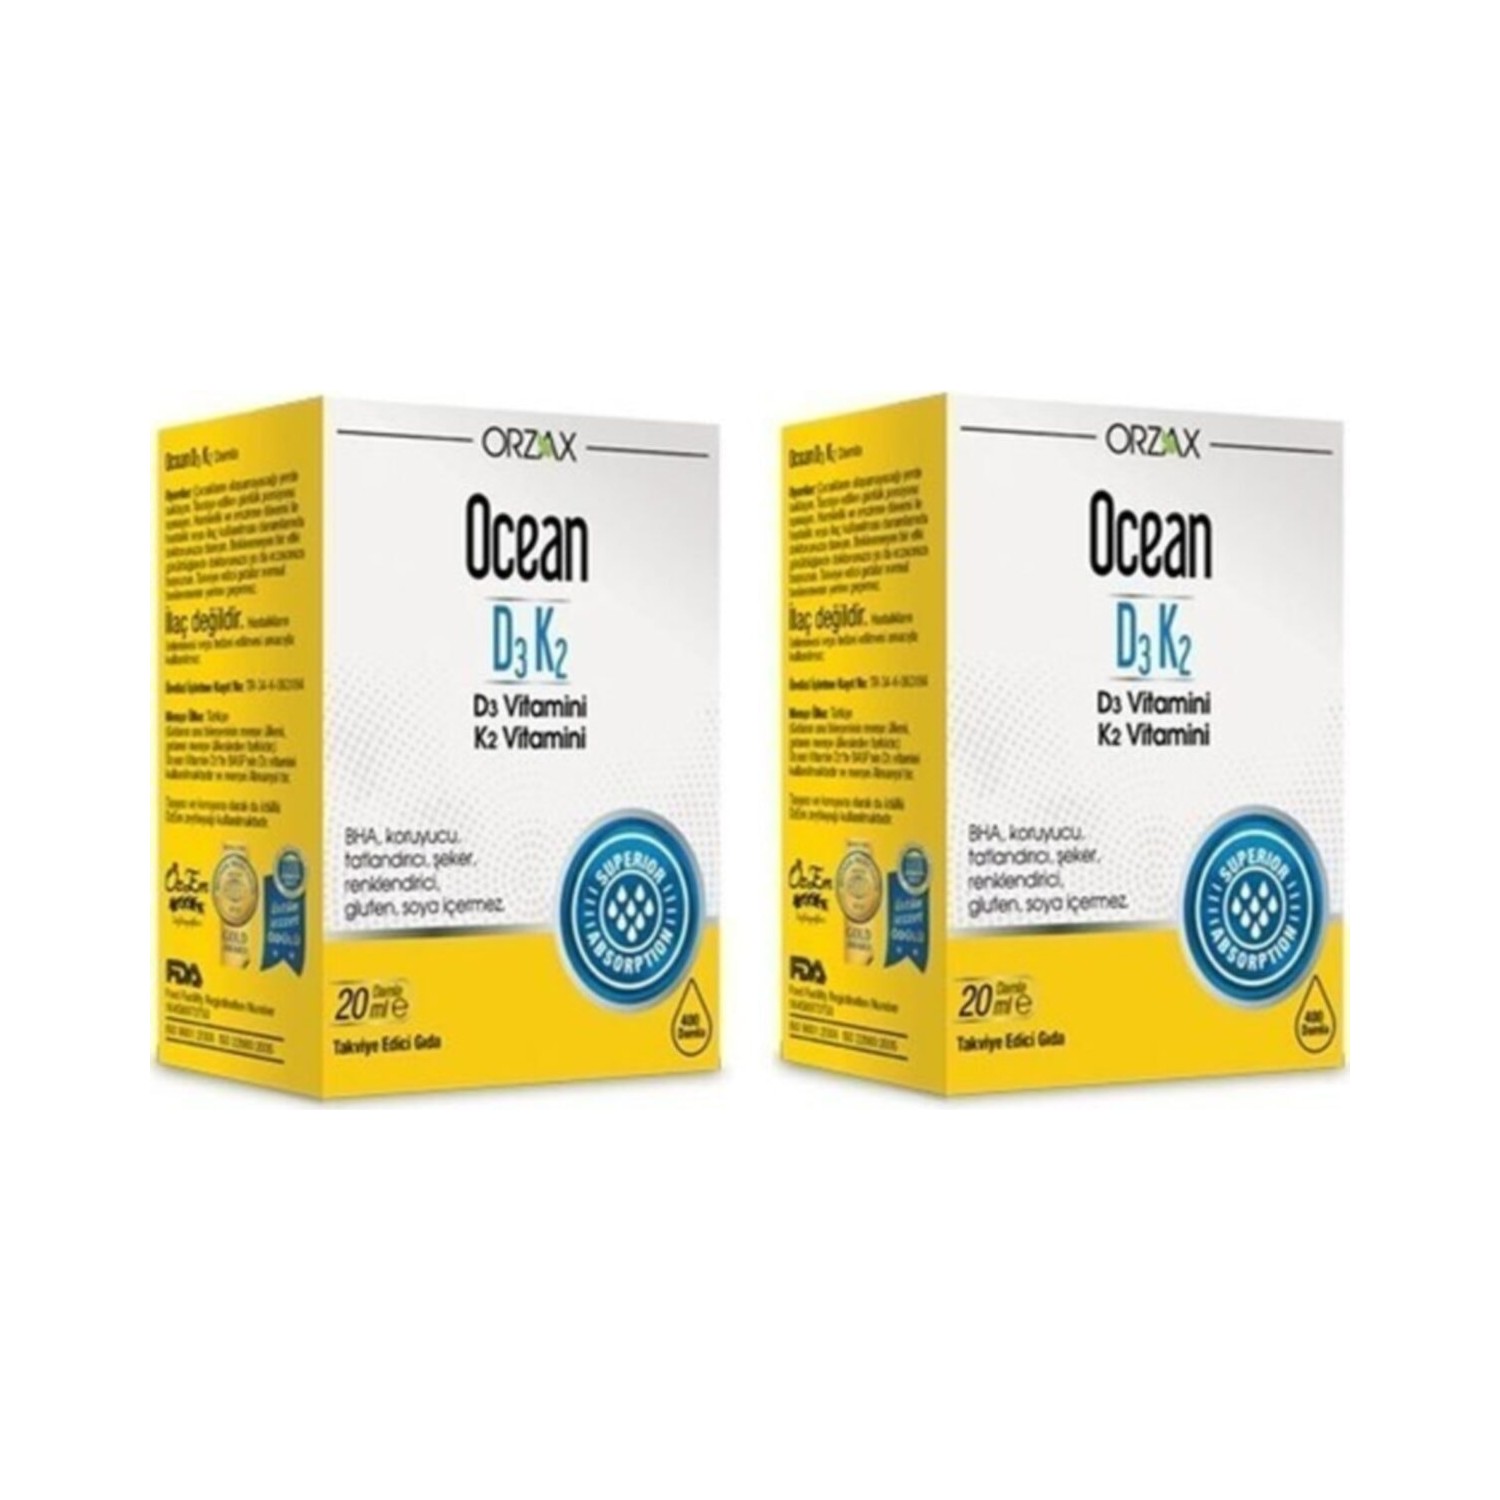 витаминные капли orzax ocean d3 k2 4 флакона по 20 мл Витаминные капли Orzax Ocean D3 / K2, 2 флакона по 20 мл